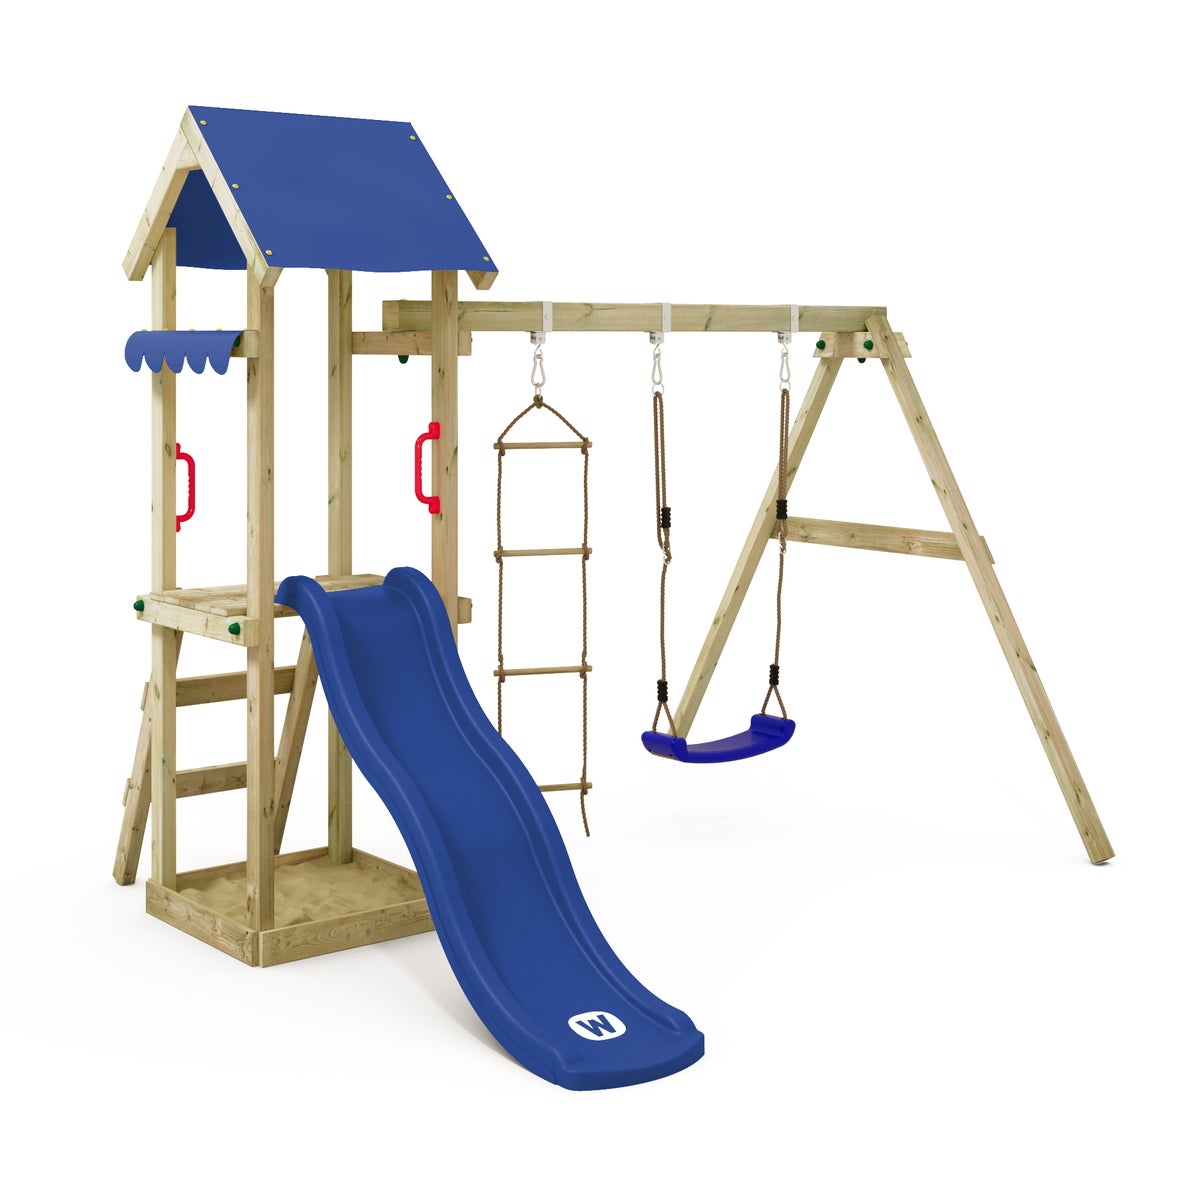 WICKEY Spielturm Klettergerüst TinyCabin mit Schaukel und Rutsche, Kletterturm mit Sandkasten, Leiter und Spiel-Zubehör - blau